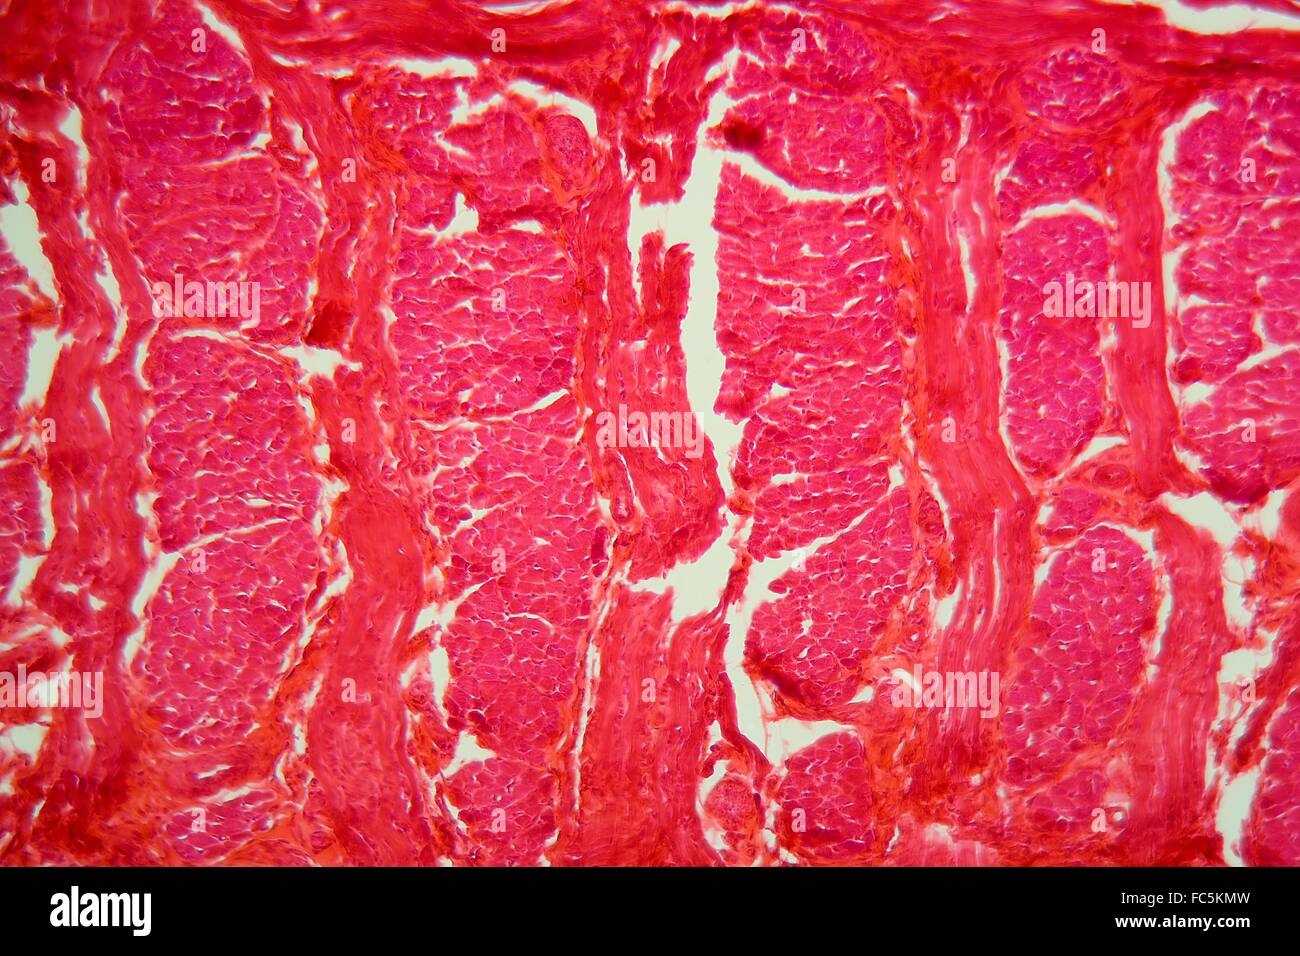 Muscels d'une langue sous le microscope Banque D'Images